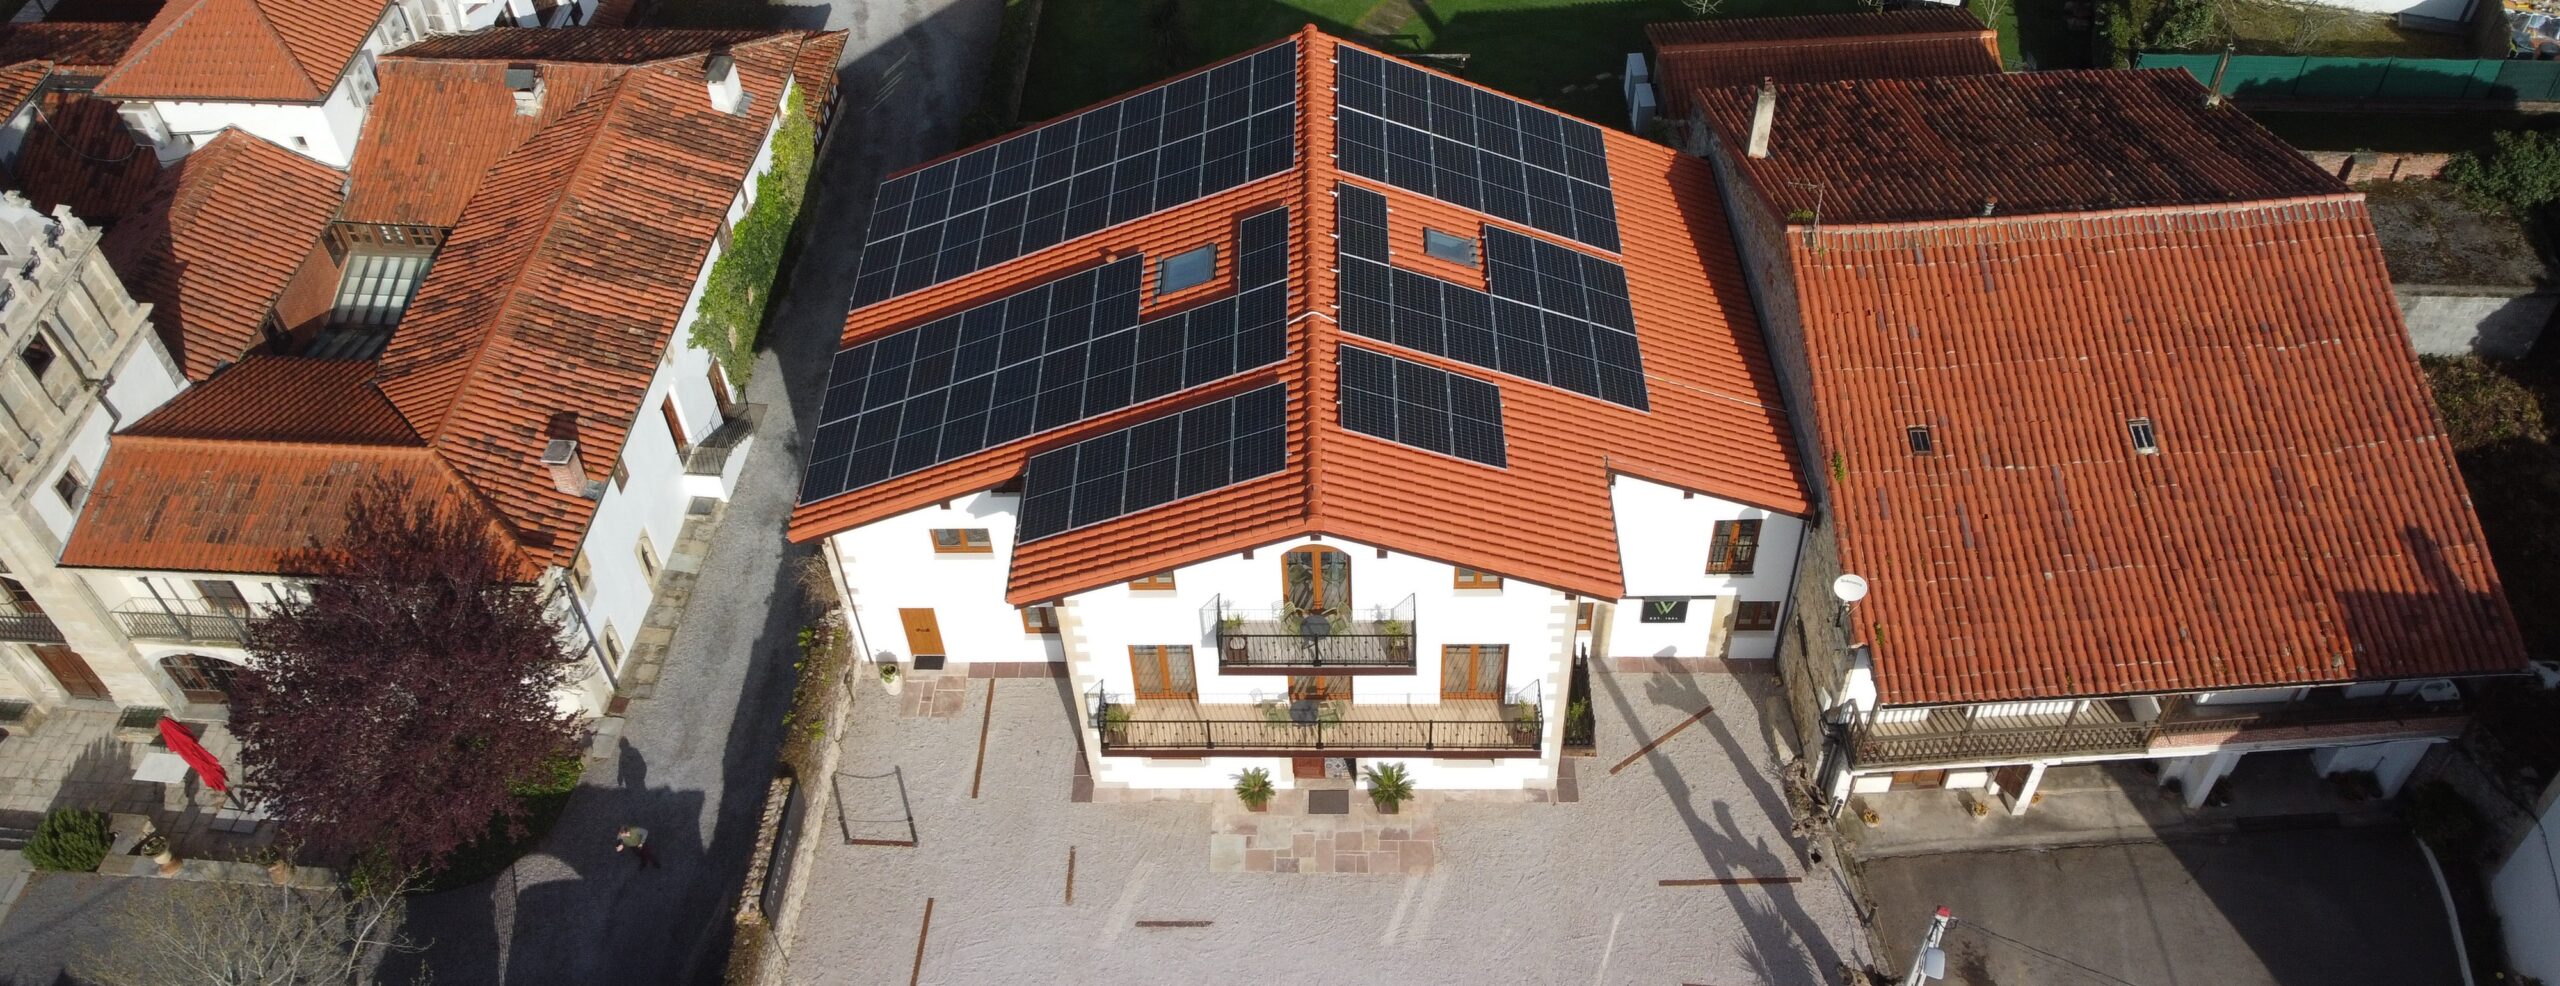 Instalación de 30 kW en Villaverde de Pontones (Cantabria)